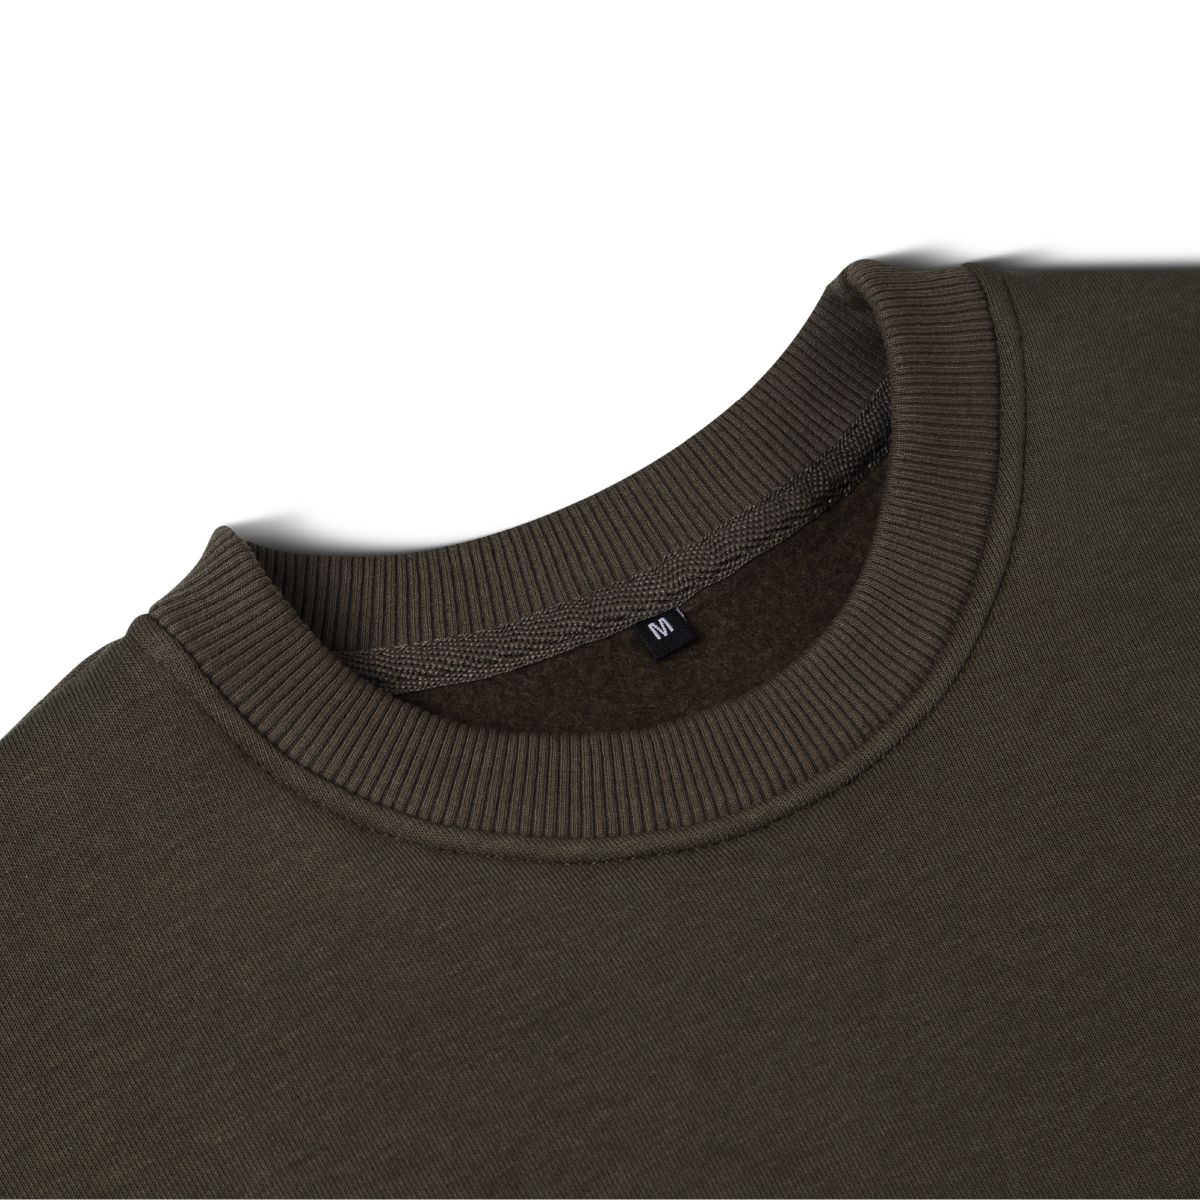 Свитшот Base Soft Sweatshirt. Свободный стиль. Цвет Олива/Olive. Размер XL 7